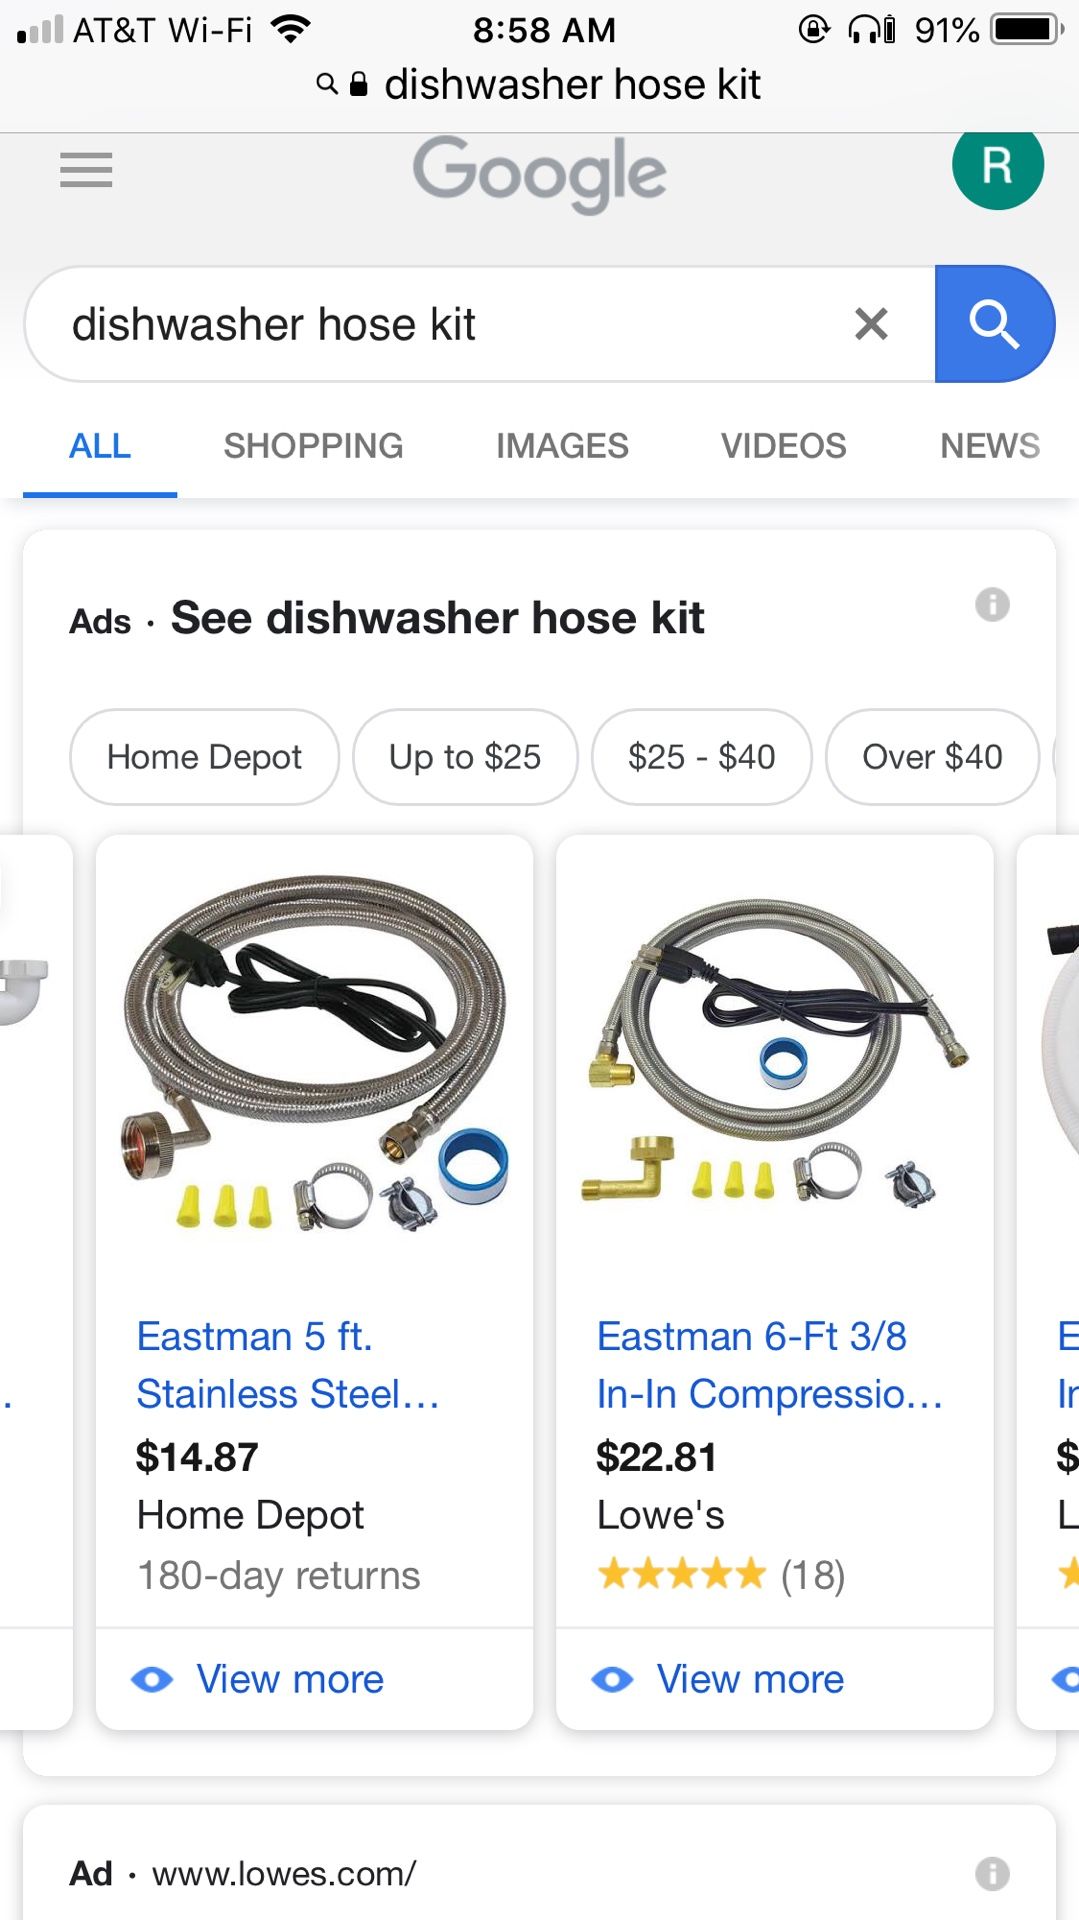 Dishwasher hose kit